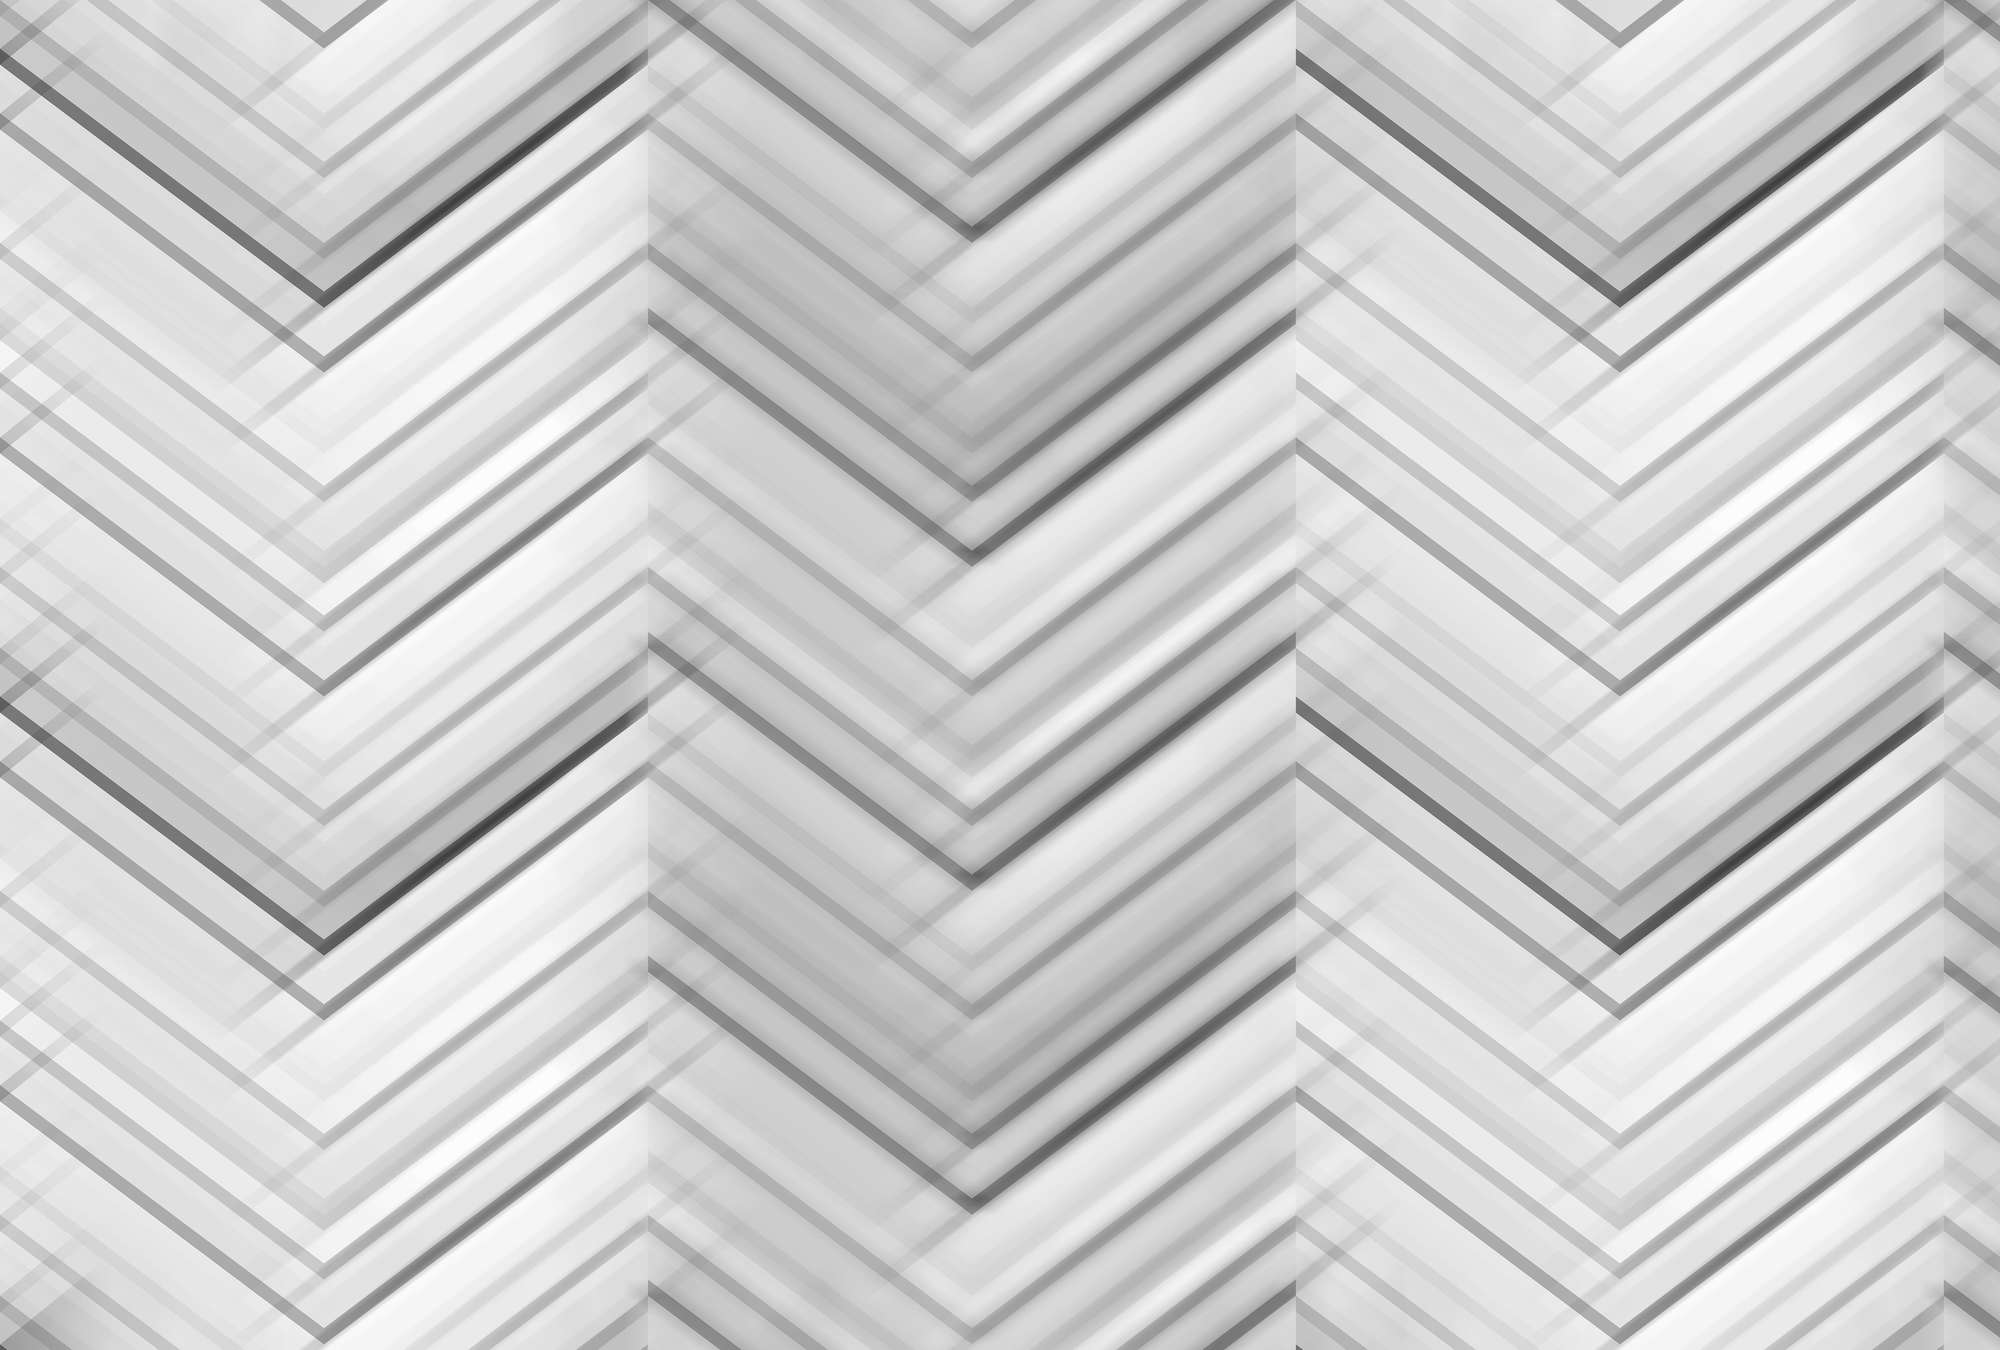             Fototapete Zick-Zack-Muster & Linien-Design – Grau, Weiß, Schwarz
        